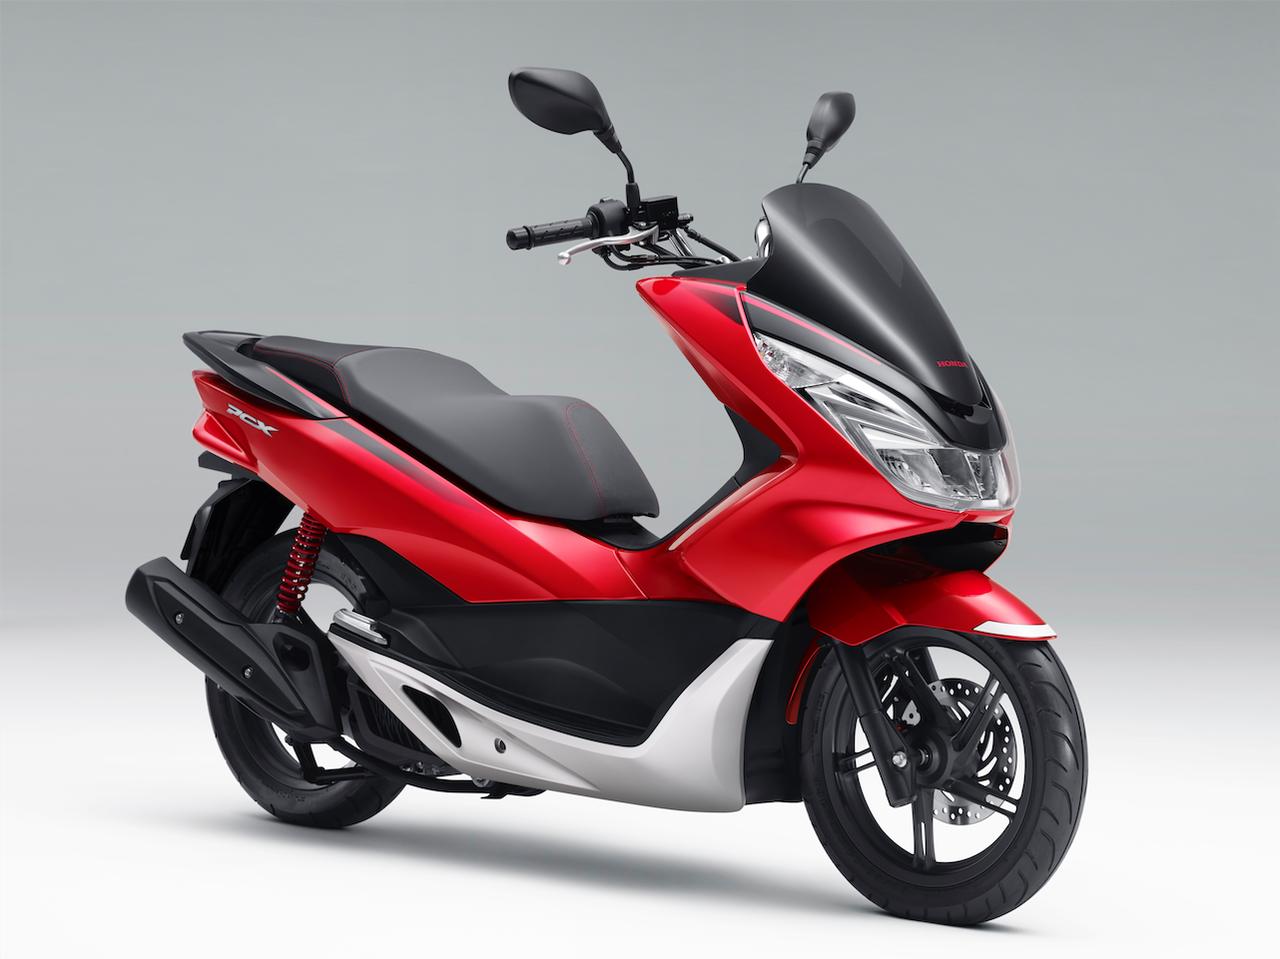 Honda 向本土市场发布新图案的pcx 踏板 新车新品 资讯中心 全球摩托车网移动版 摩托车品牌 摩托车报价 摩托车之家 摩托车门户